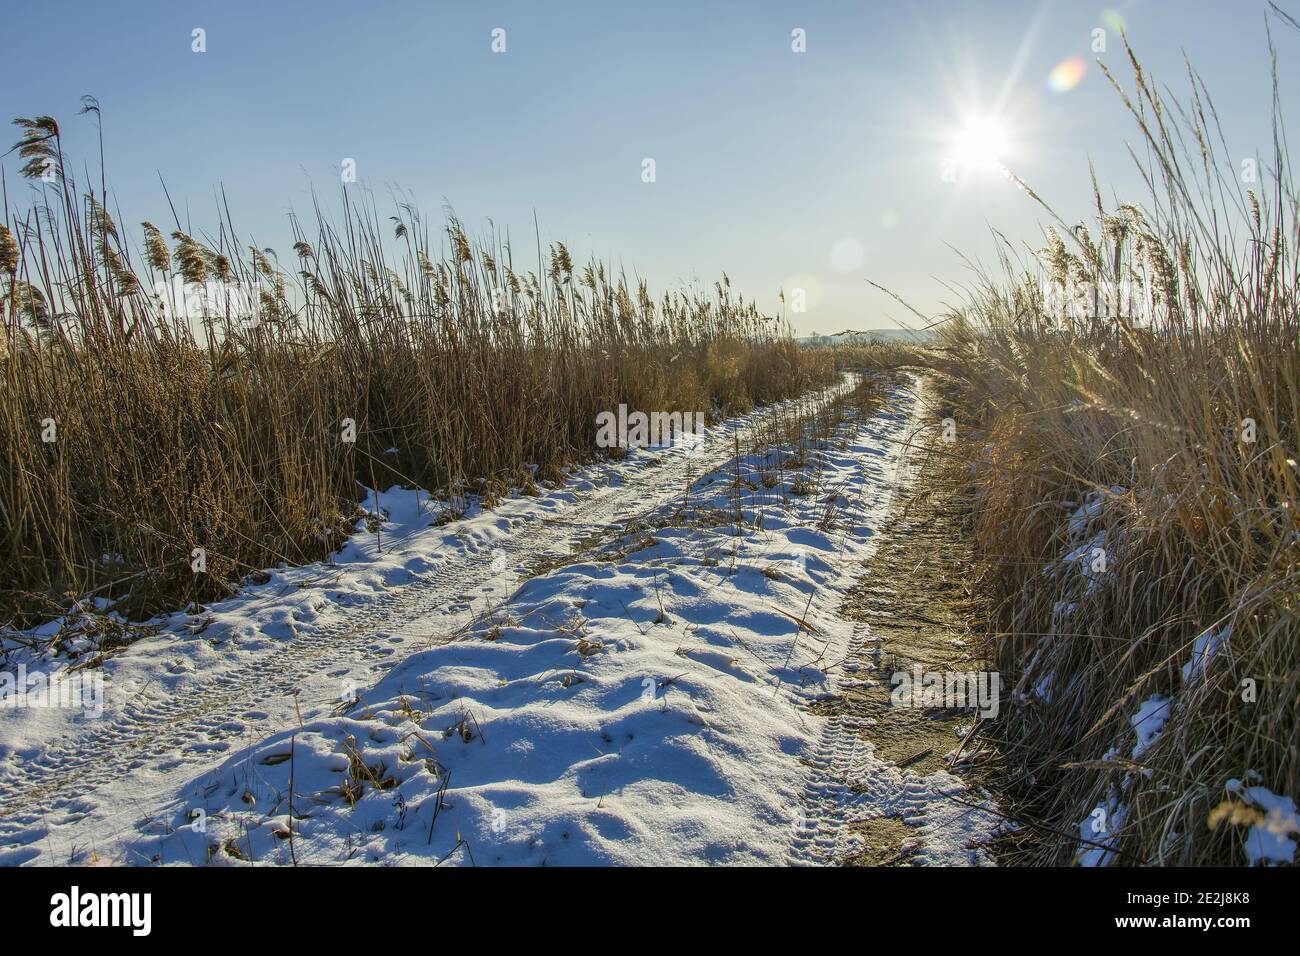 Route enneigée avec roseaux, soleil dans le ciel, vue en hiver Banque D'Images